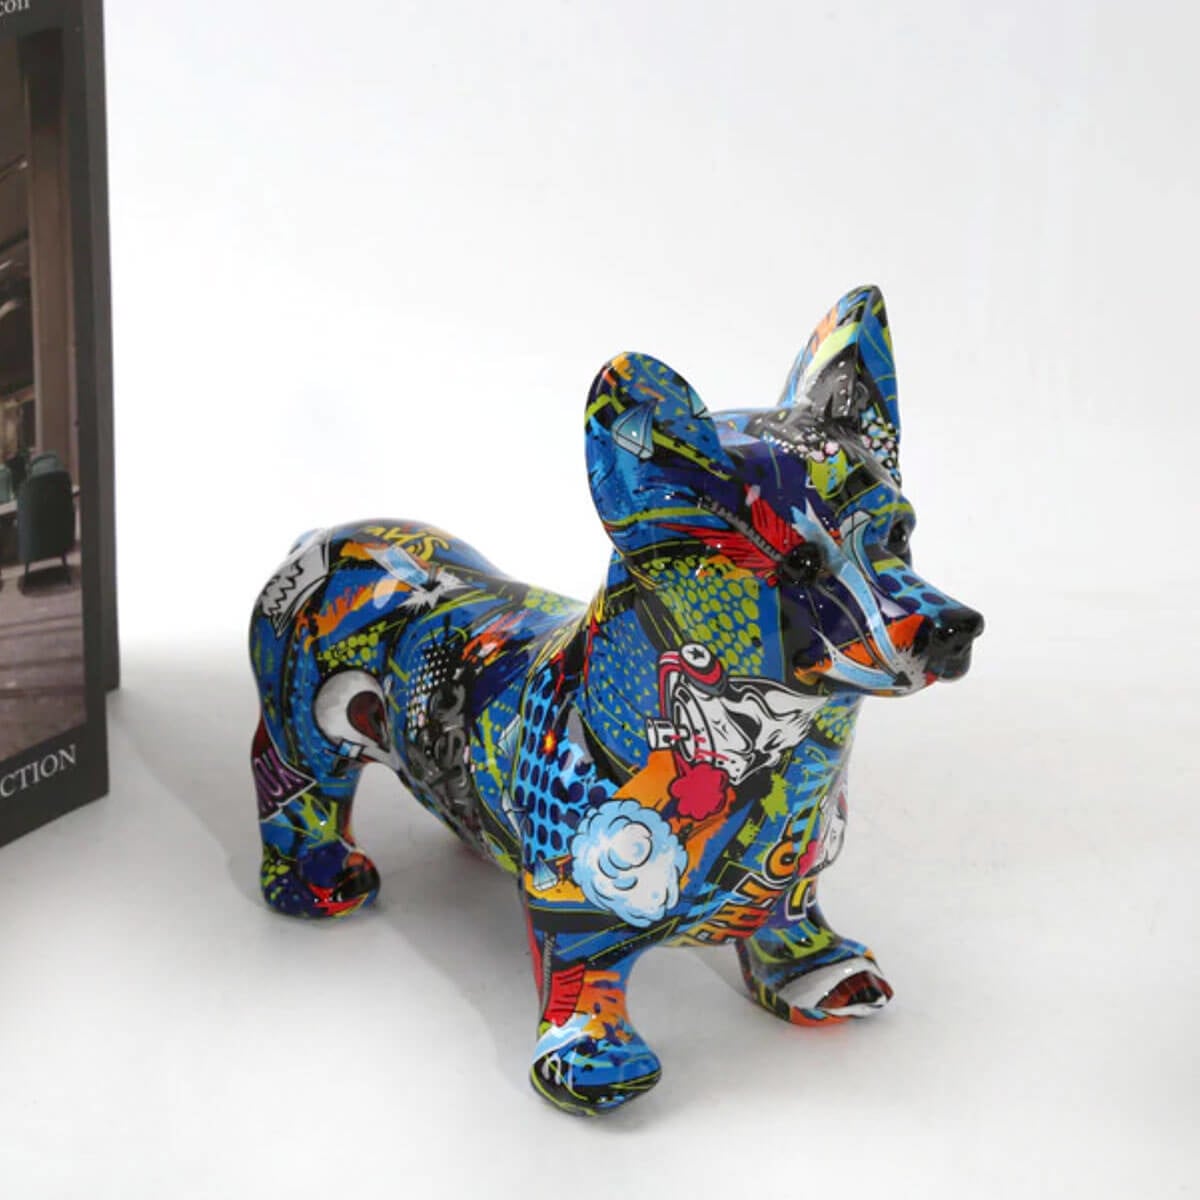 Corgi Dog Statue Colorful Graffiti Art Escultura